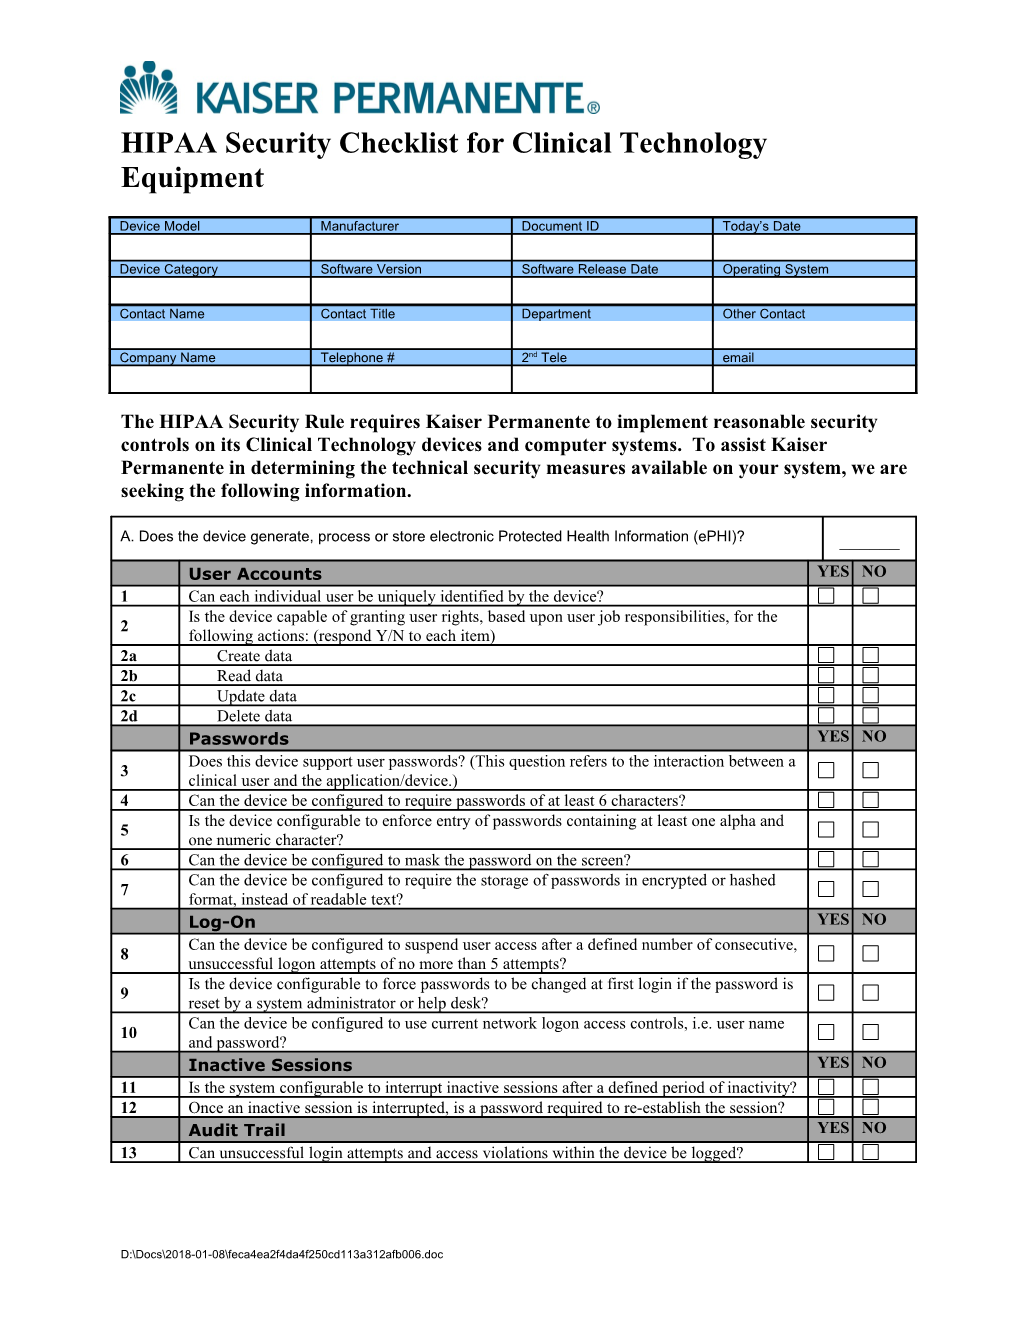 New Equipment HIPAA Checklist